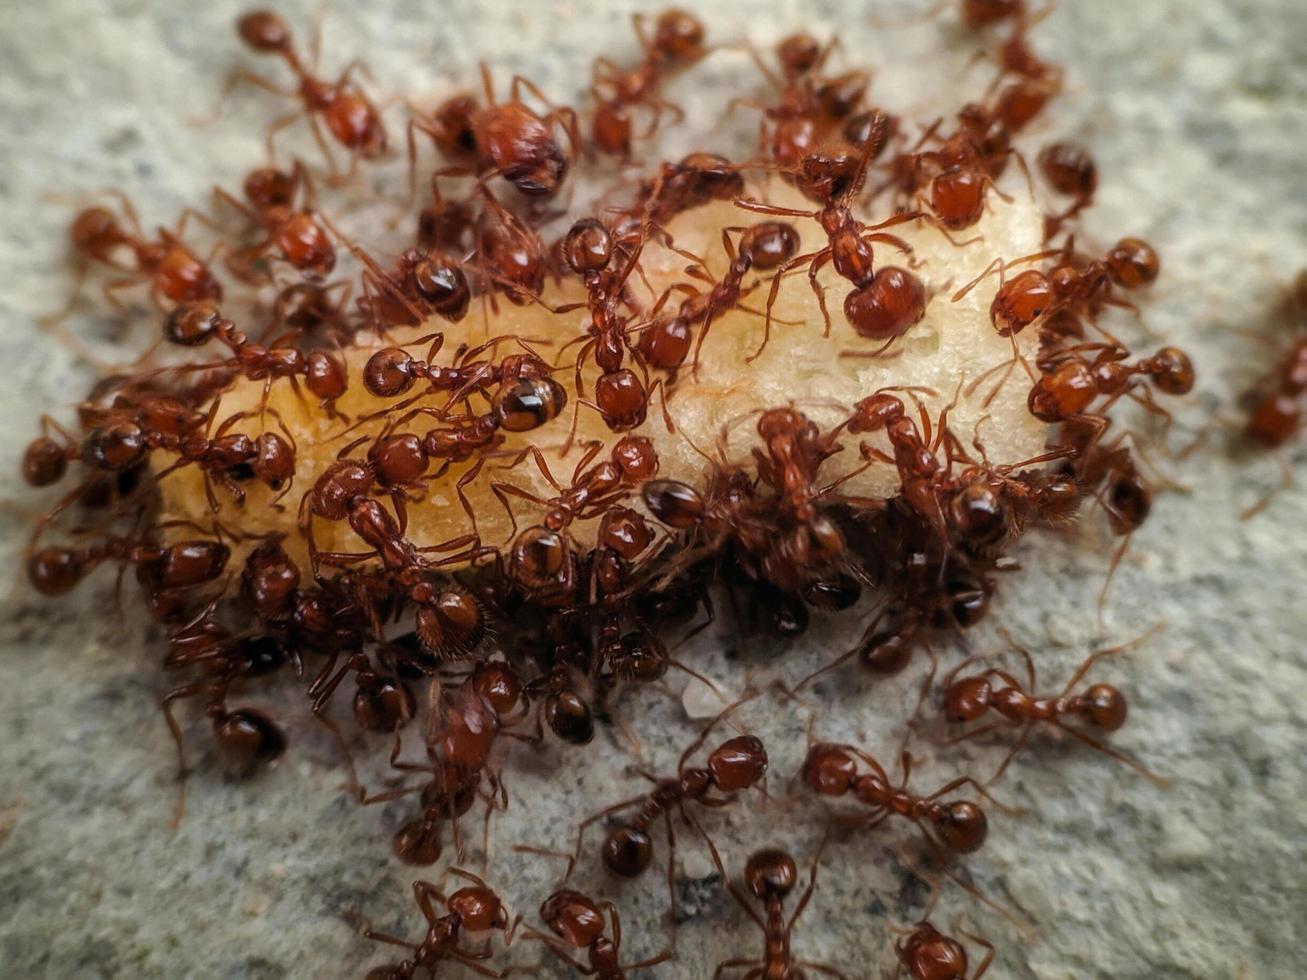 photo macro d'une colonie de fourmis de feu mangeant de la nourriture tombée et sale